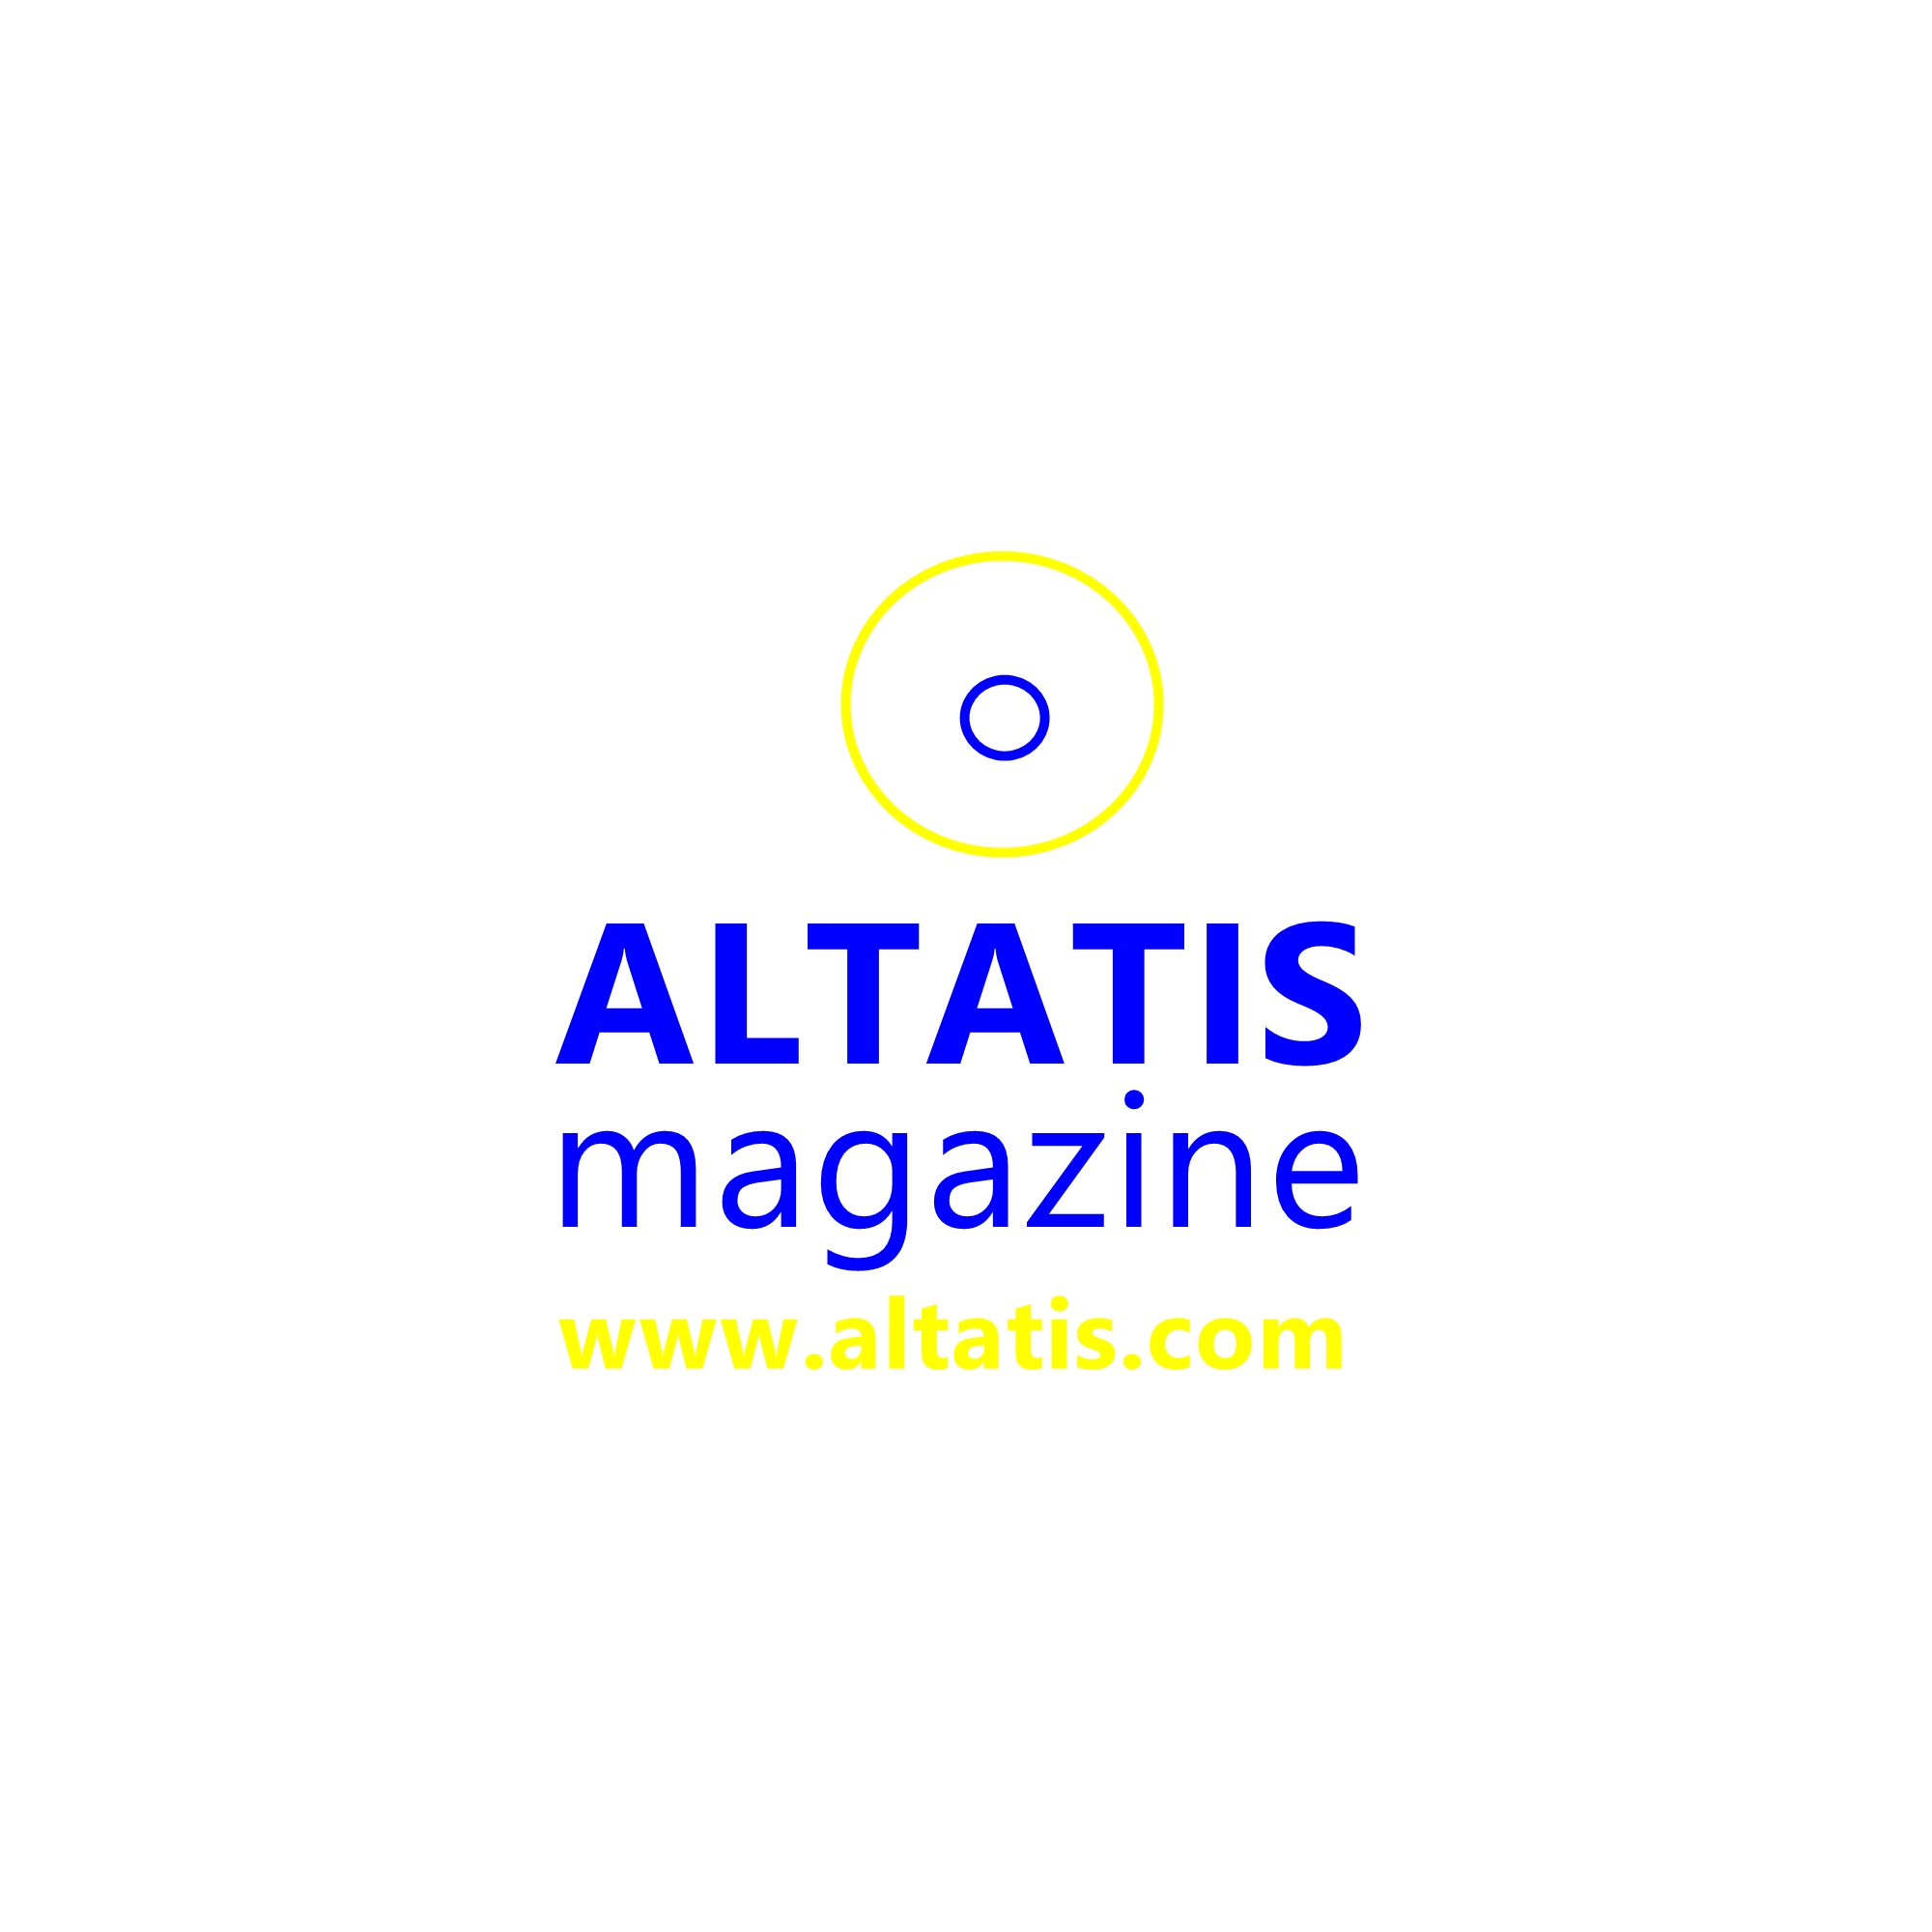 ALTATIS magazine logo Ukraine